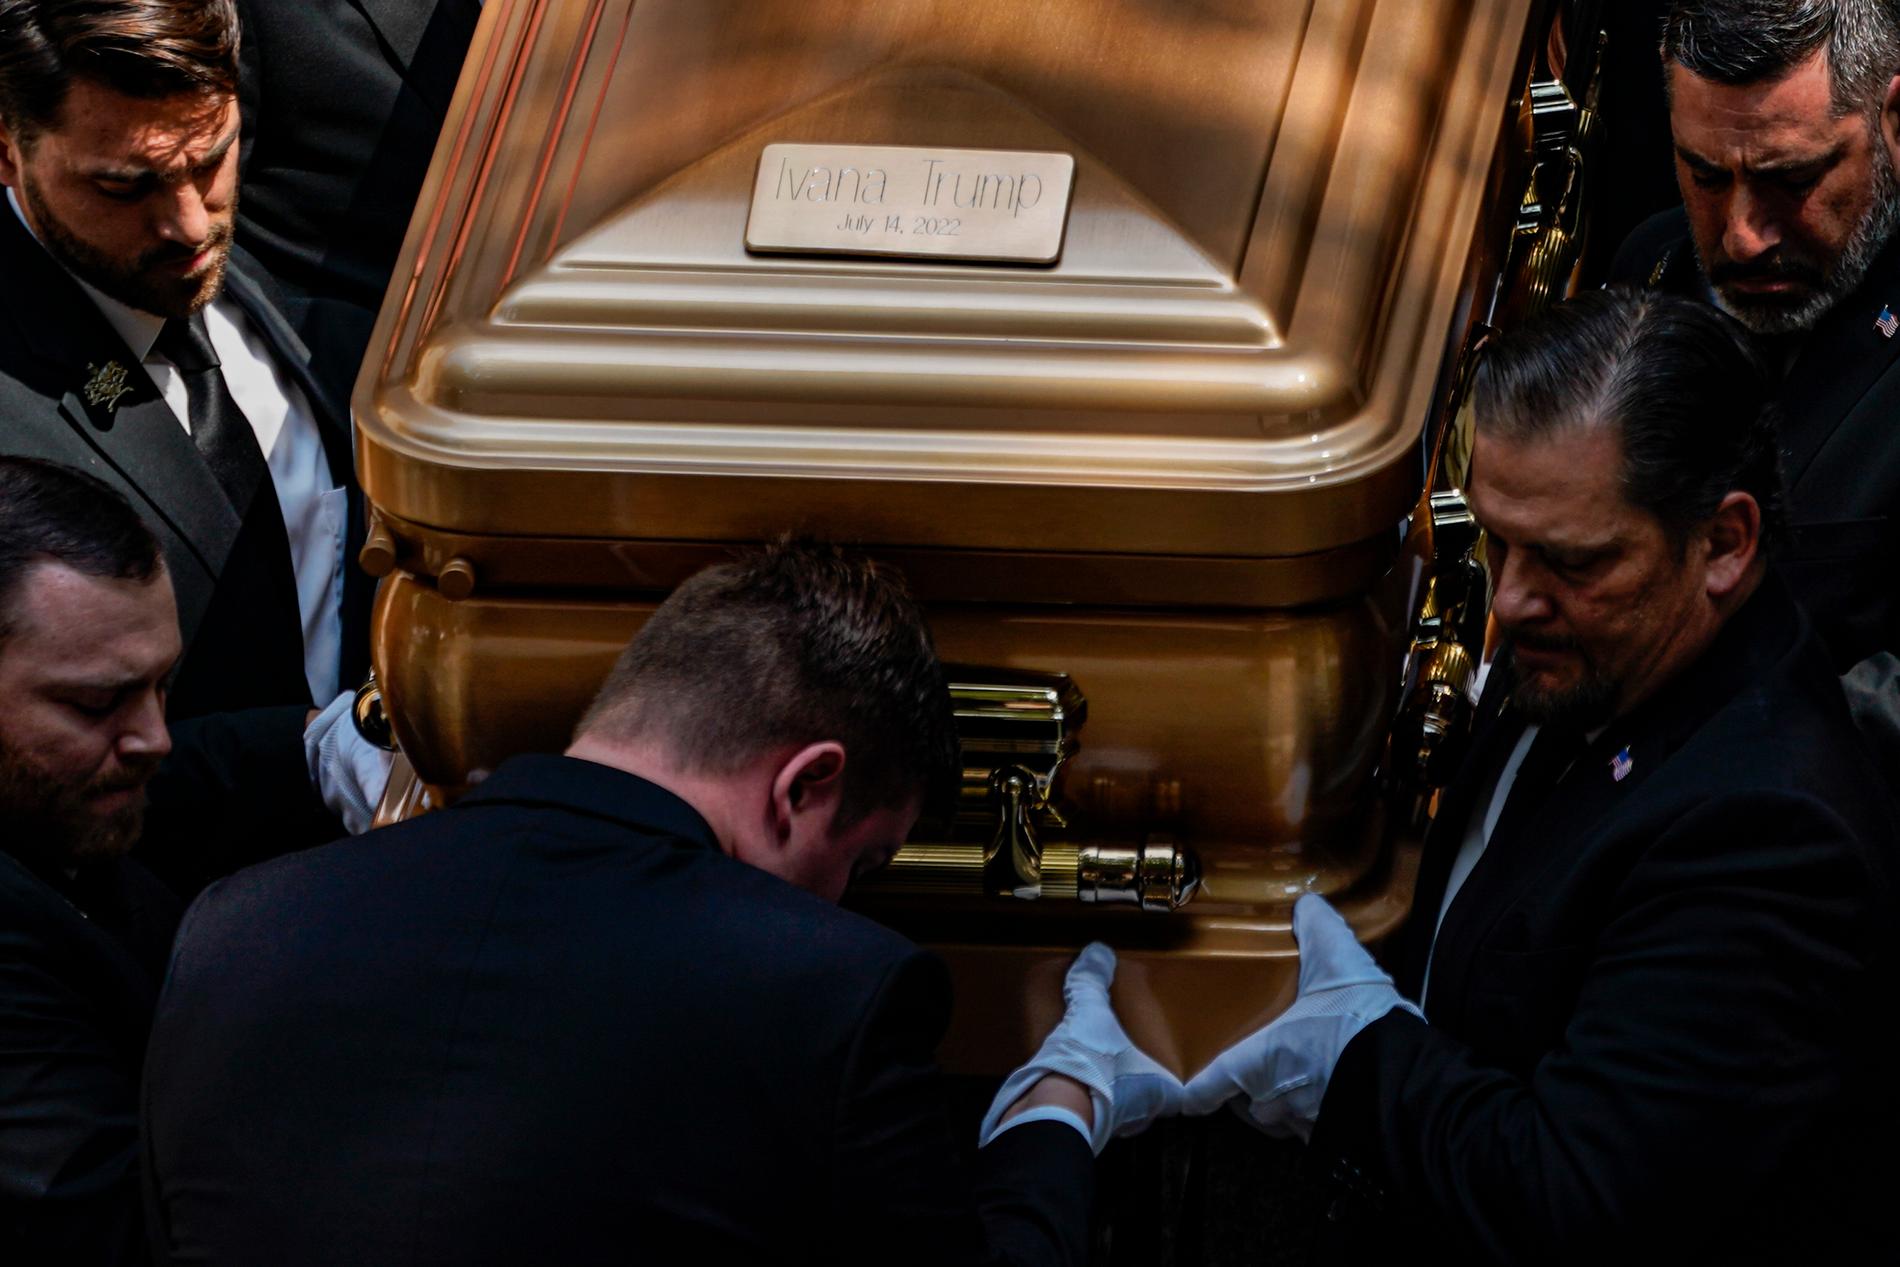 Kistbärare bär ut kistan efter Ivana Trumps begravning.